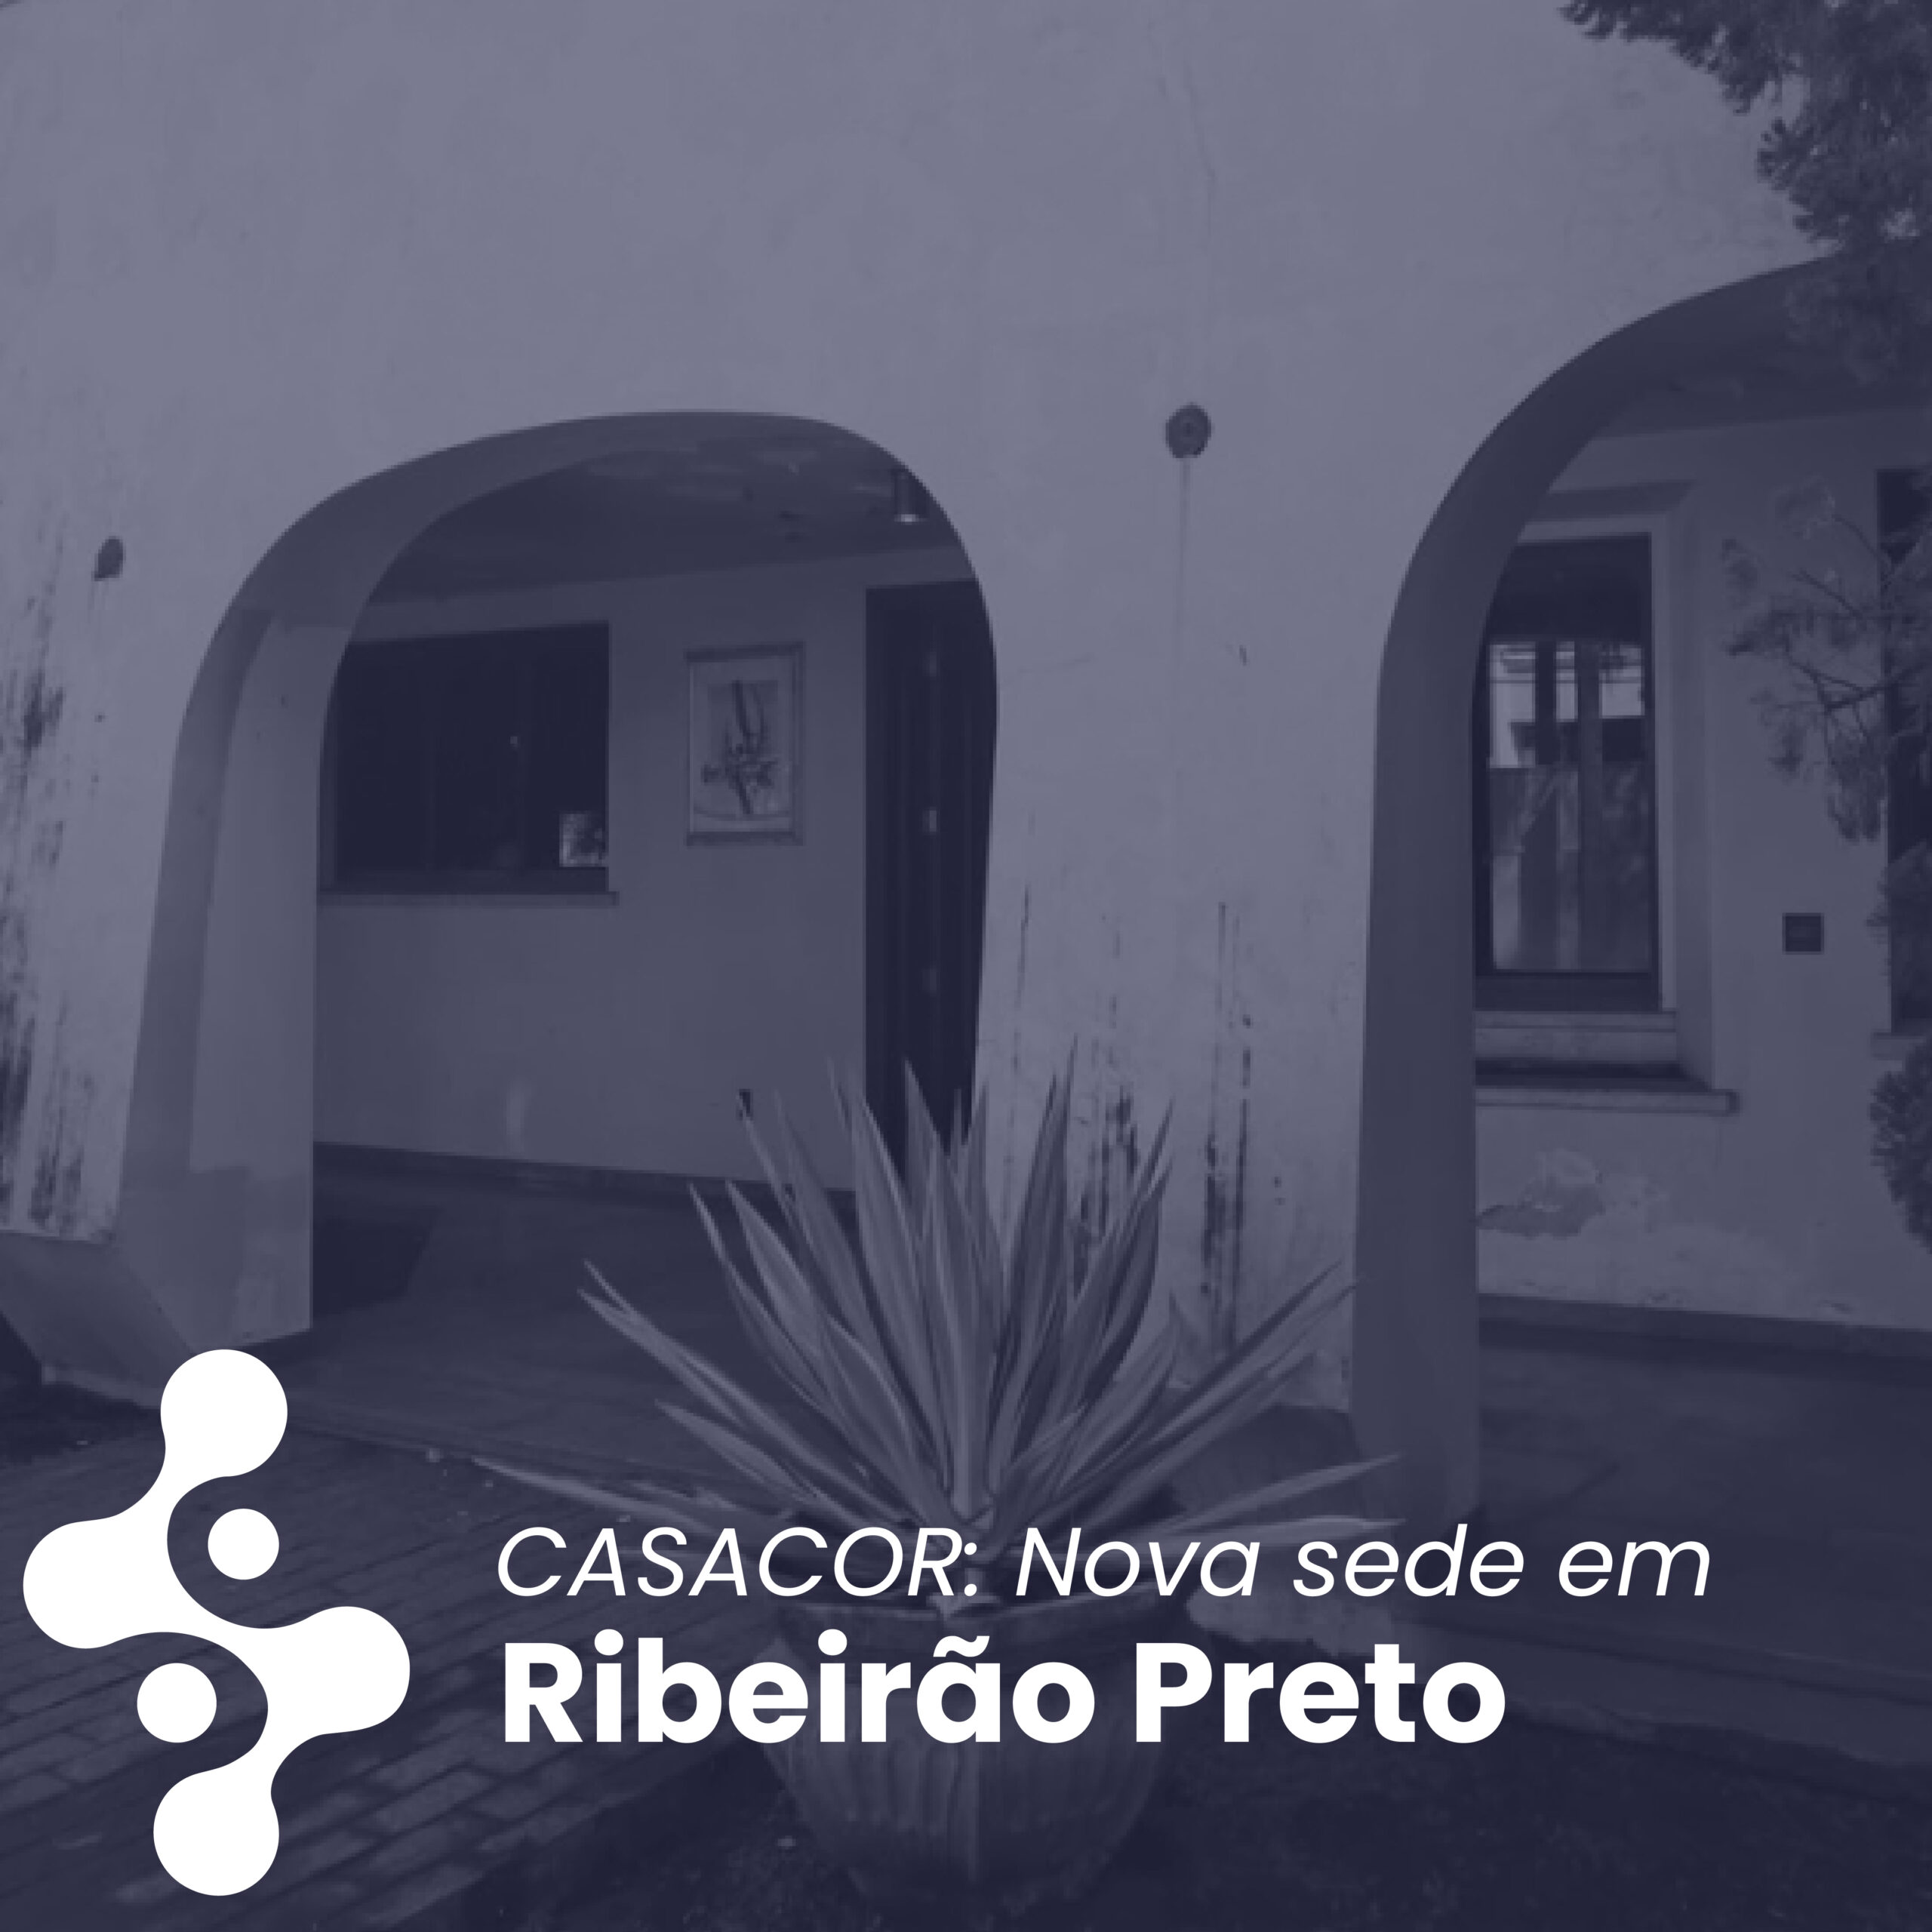 Nova sede da CASACOR em Ribeirão Preto promove Open House.